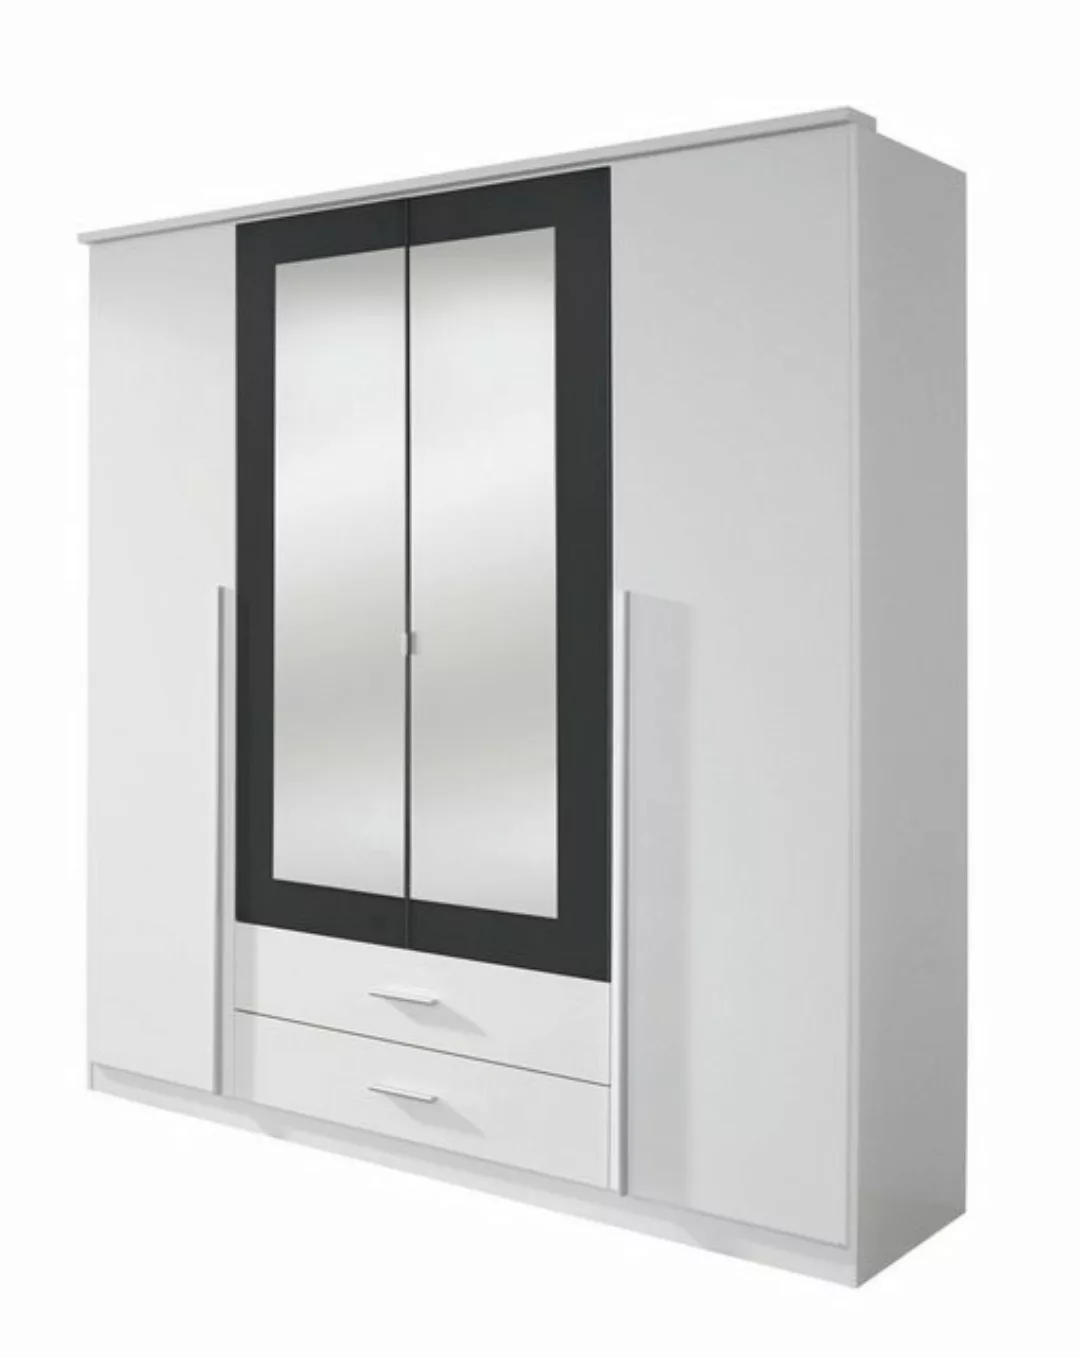 Kindermöbel 24 Spiegelschrank Basti weiß - grau-metallic 4 Türen günstig online kaufen